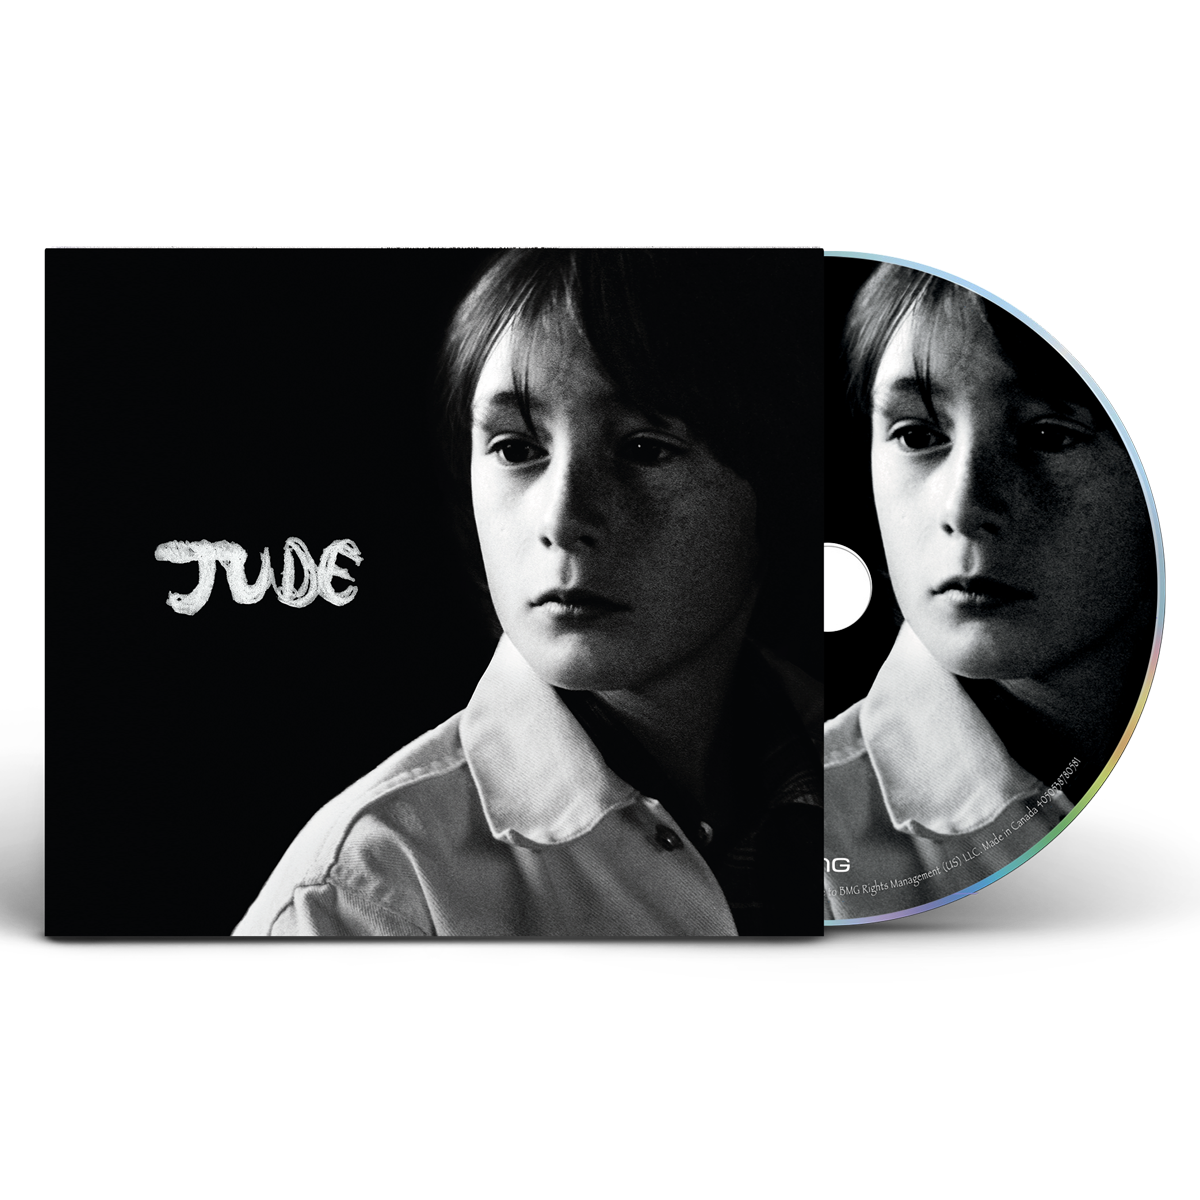 Jude - CD